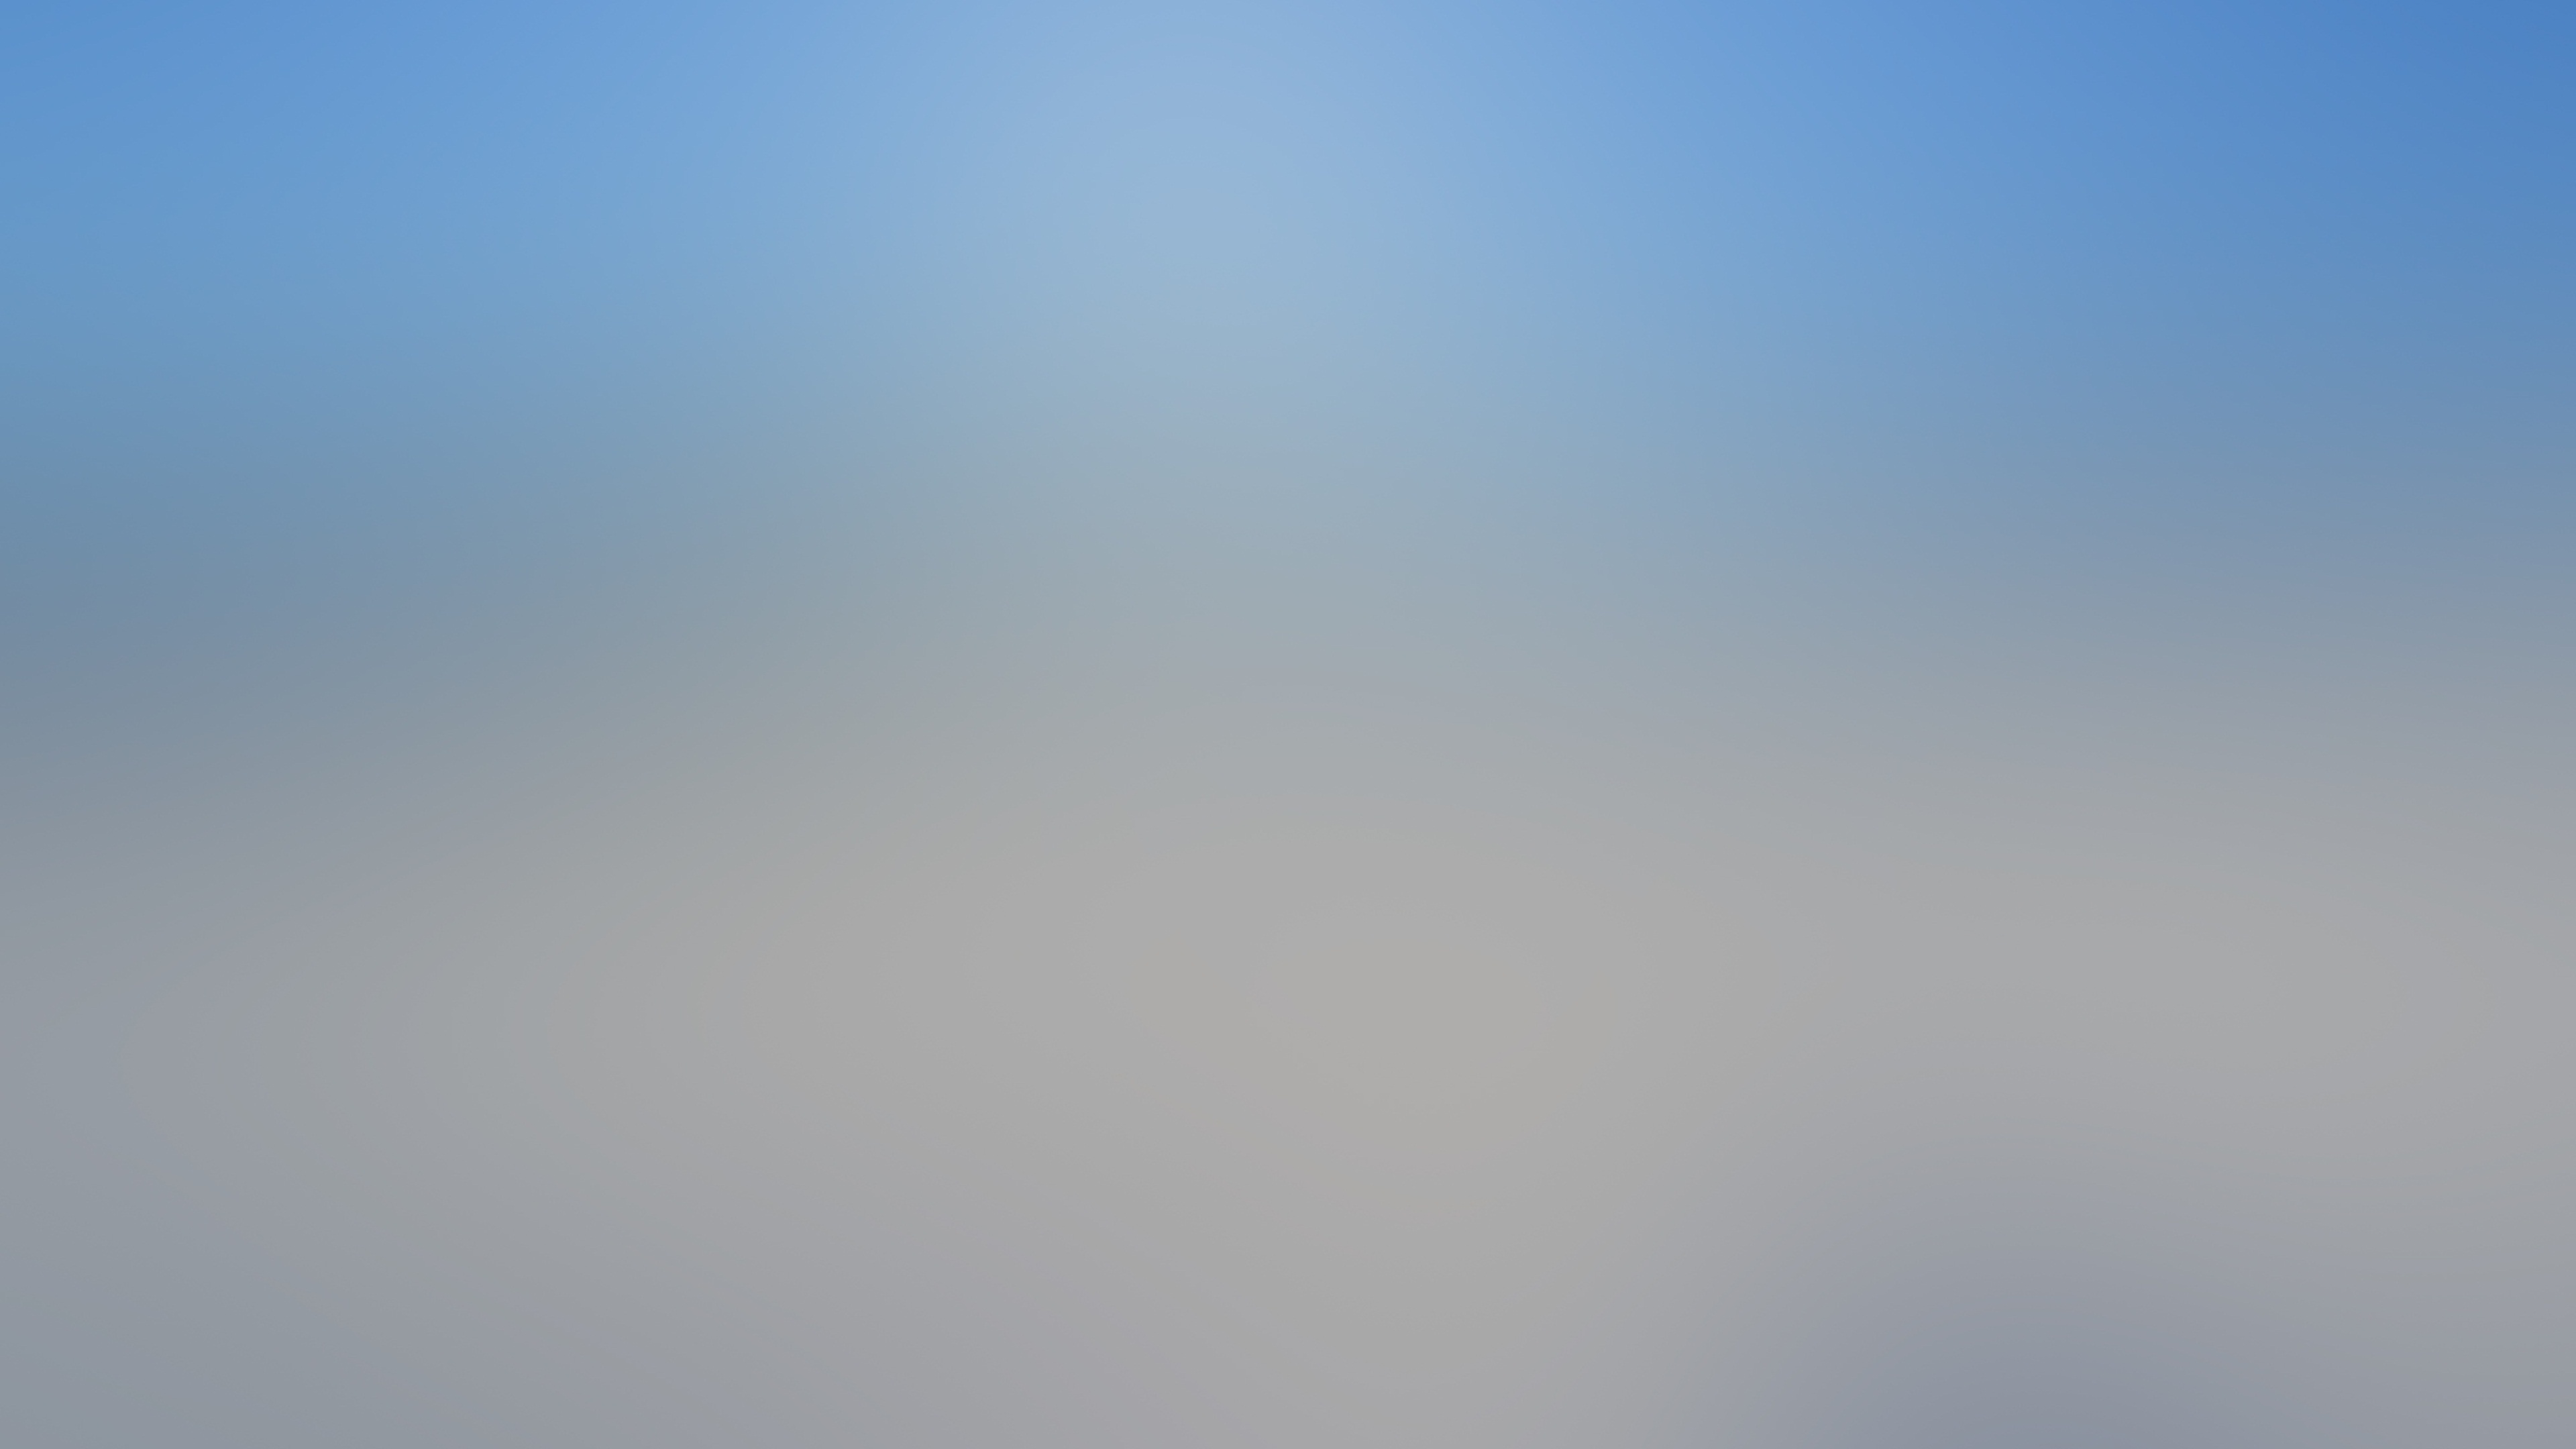 4k Blurred Backgrounds Desktop Widescreen Wallpaper - Wallpaper - 3840x2160  Wallpaper 